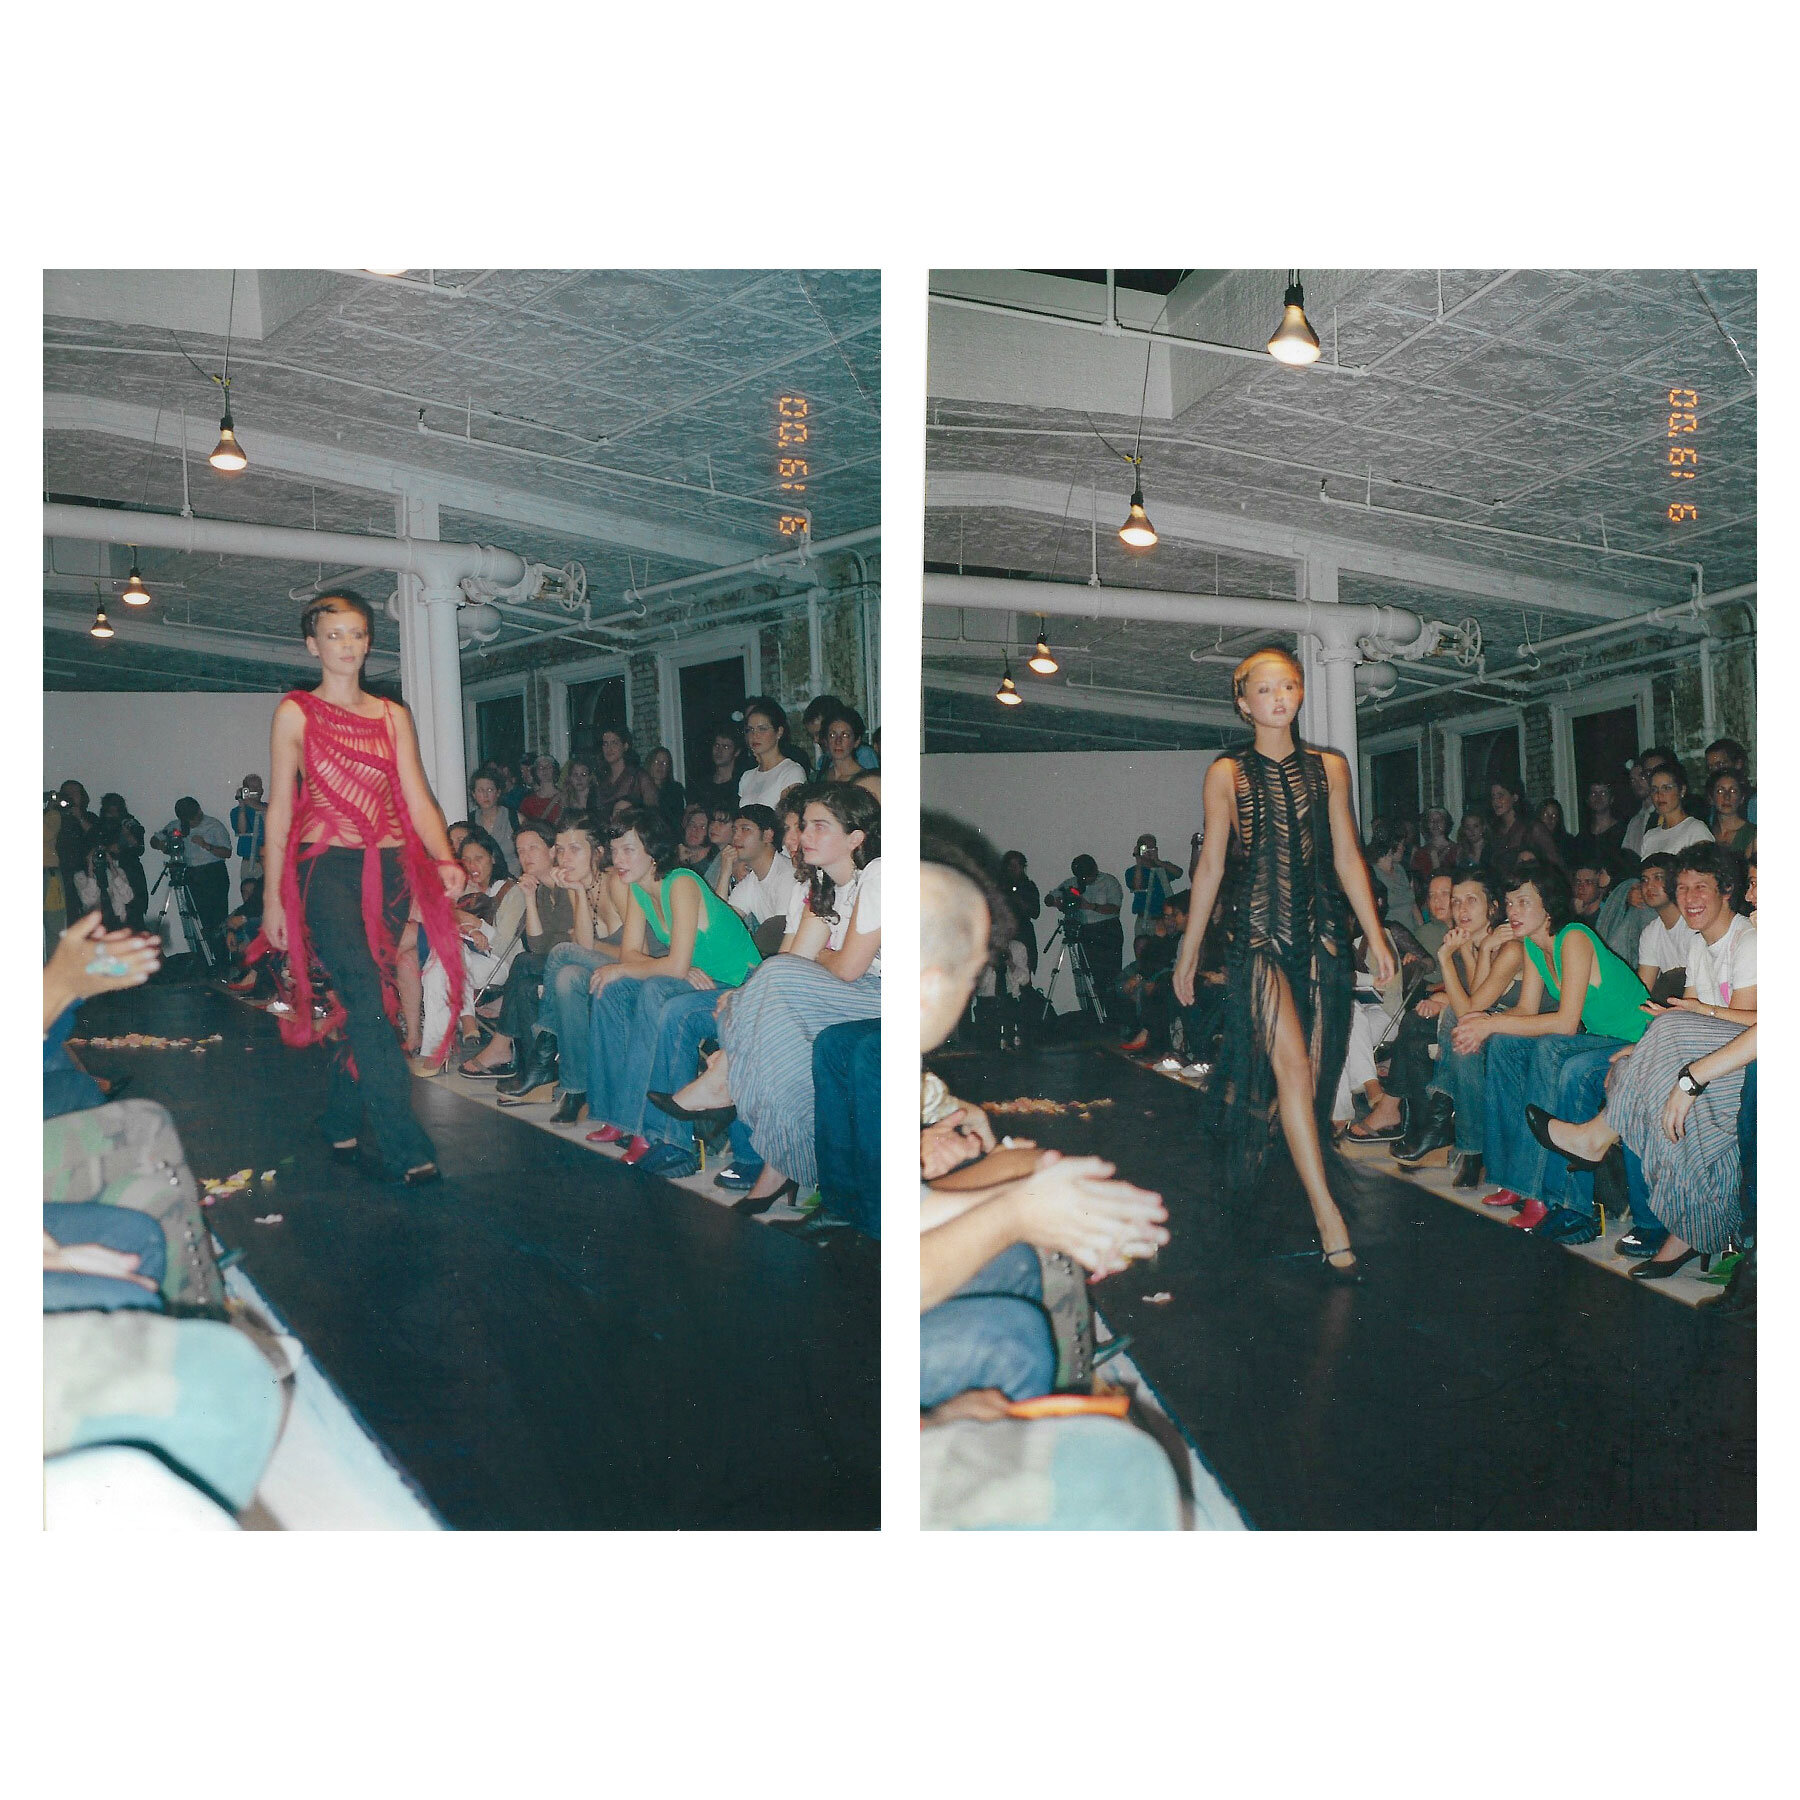  Models on the runway at Benjamin Cho Spring/Summer 2001.  Images via Cathy Cho and Vogue Runway c/o Givenchy.  